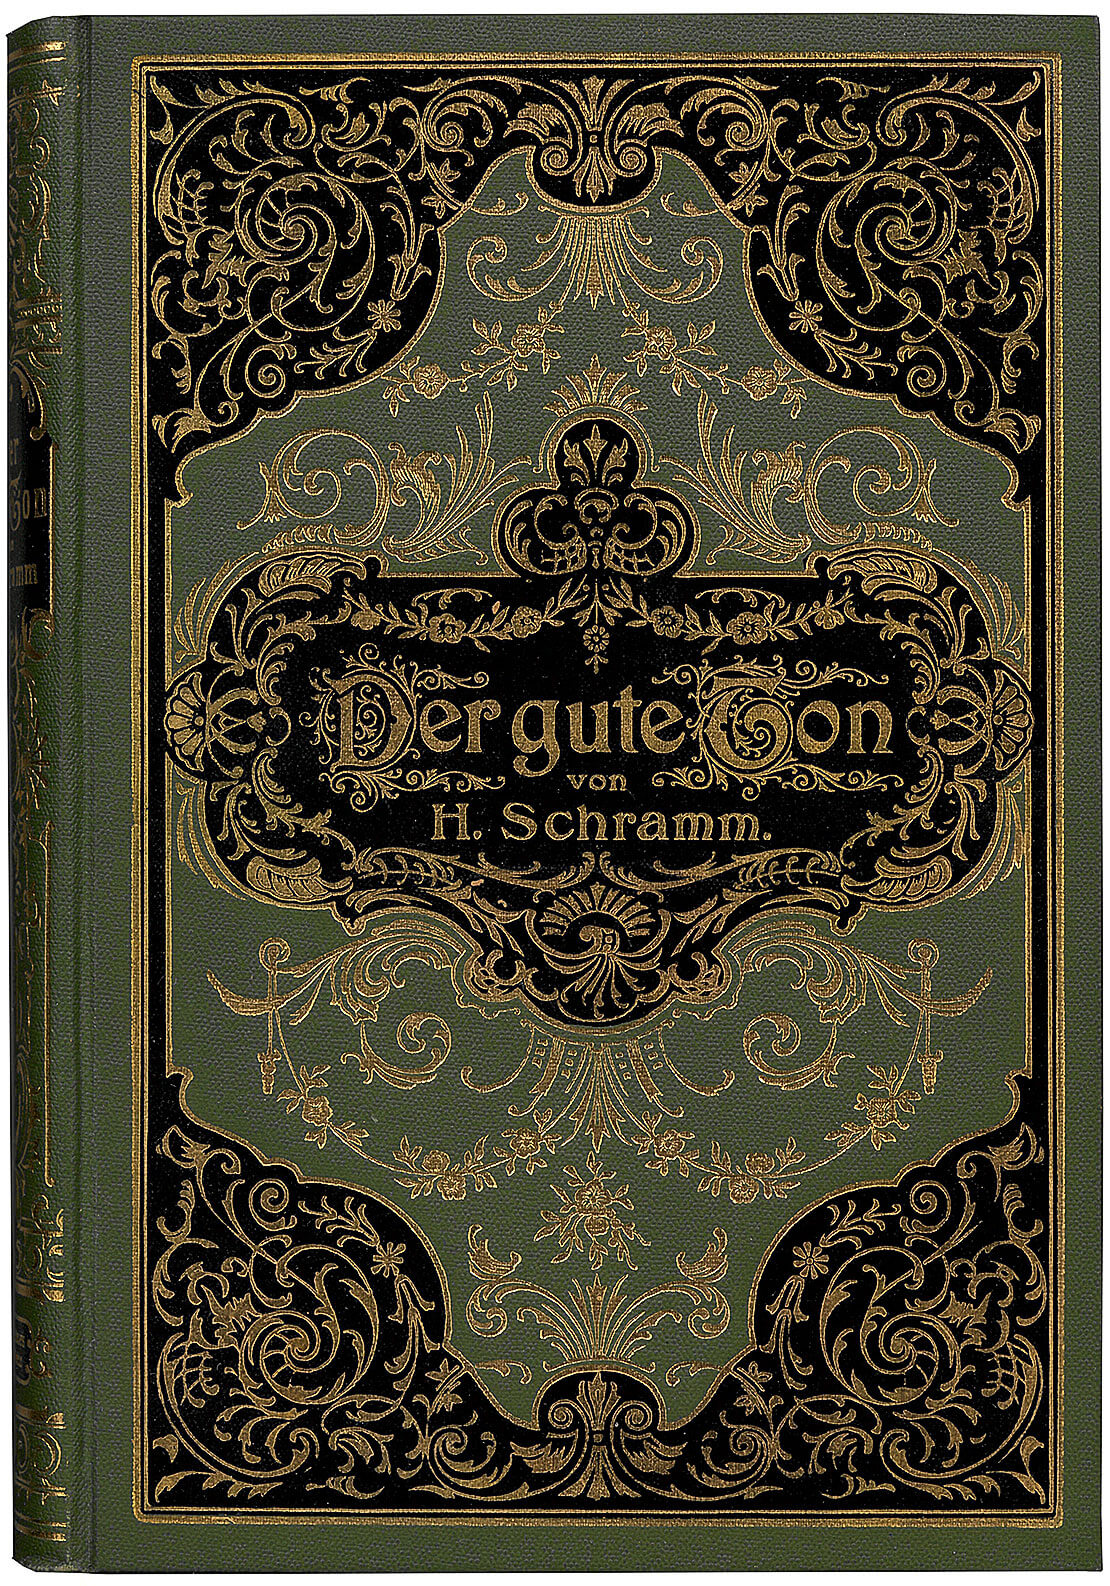 H. Schramm: Der gute Ton oder das richtige Benehmen, 9. Aufl. Berlin 1902, Susanne Breuss 